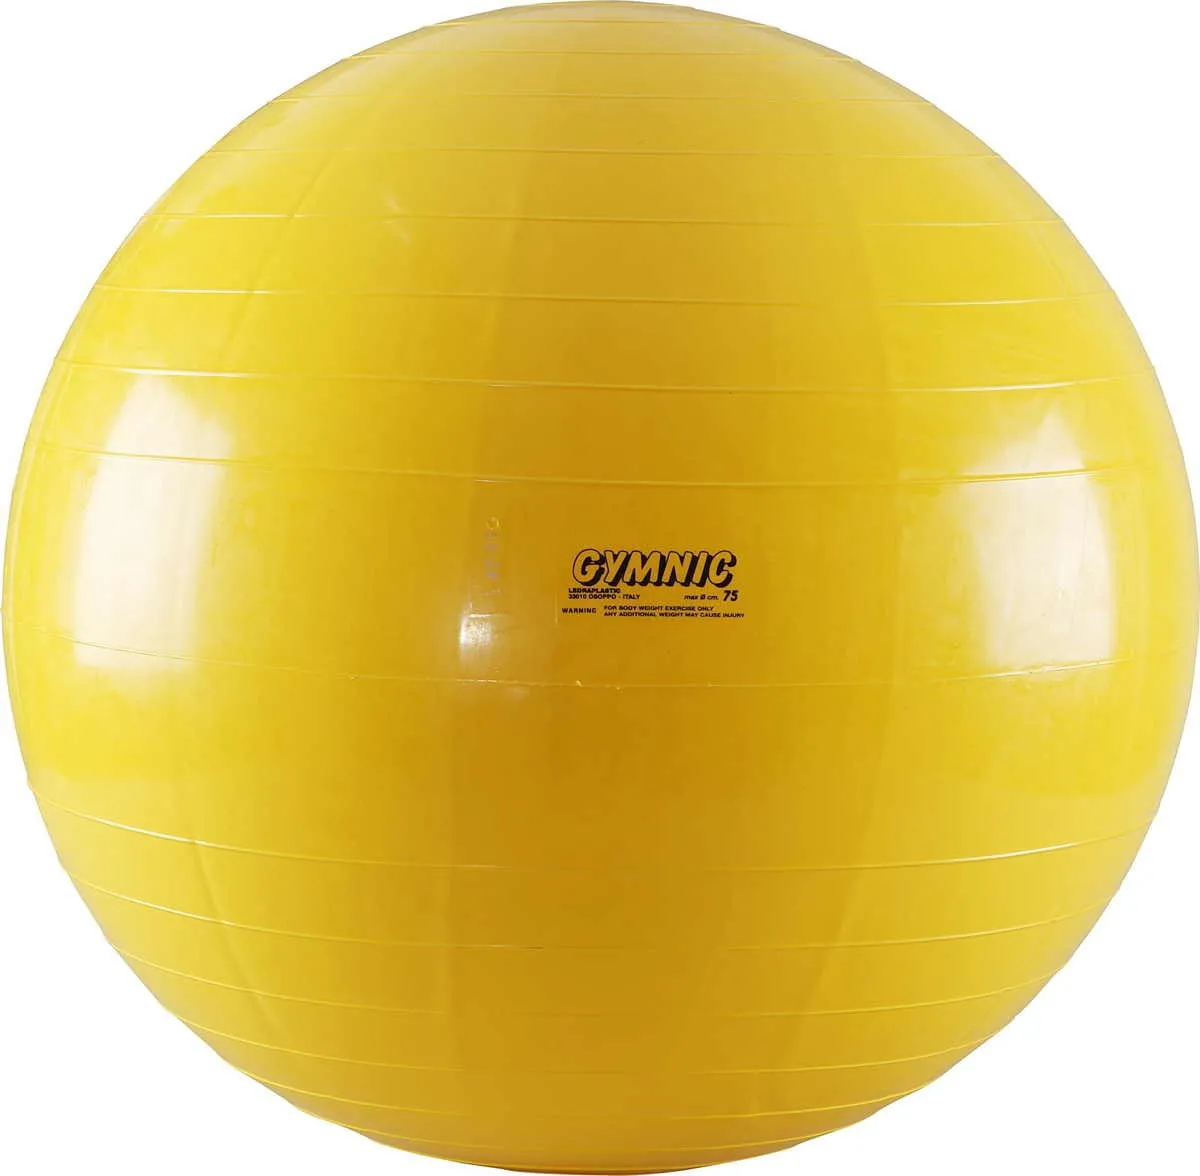 Gymnastik, Yoga und Sitz Ball Durchmesser 75 cm, gelb